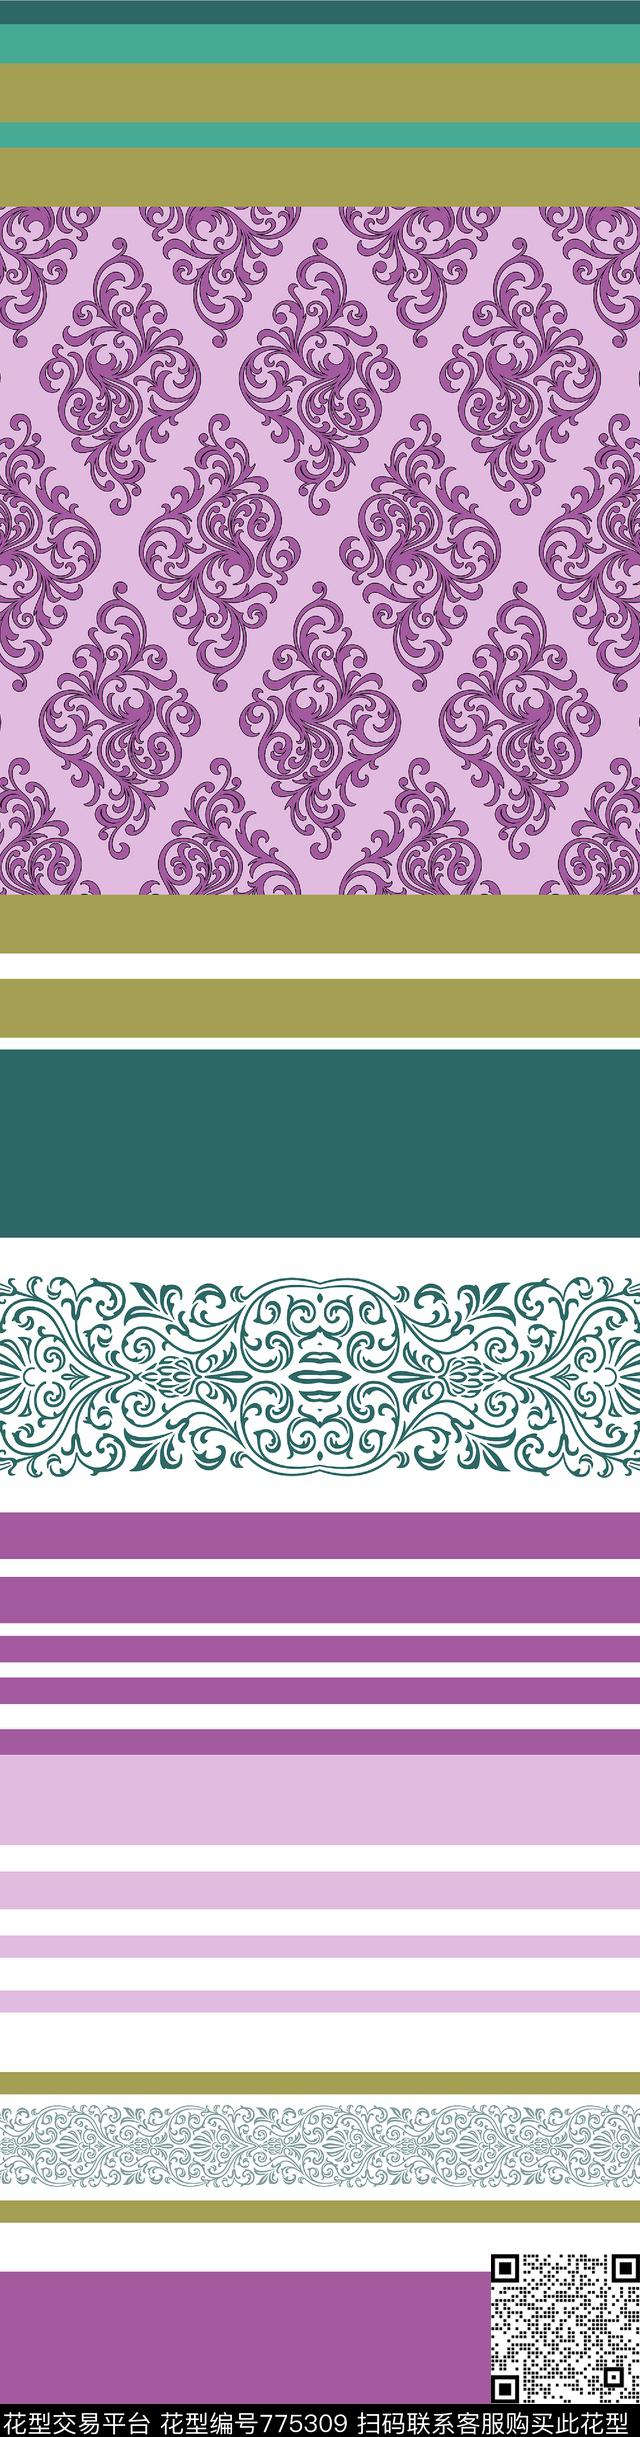 bedset 05.jpg - 775309 - textile design bedset - 数码印花花型 － 床品花型设计 － 瓦栏